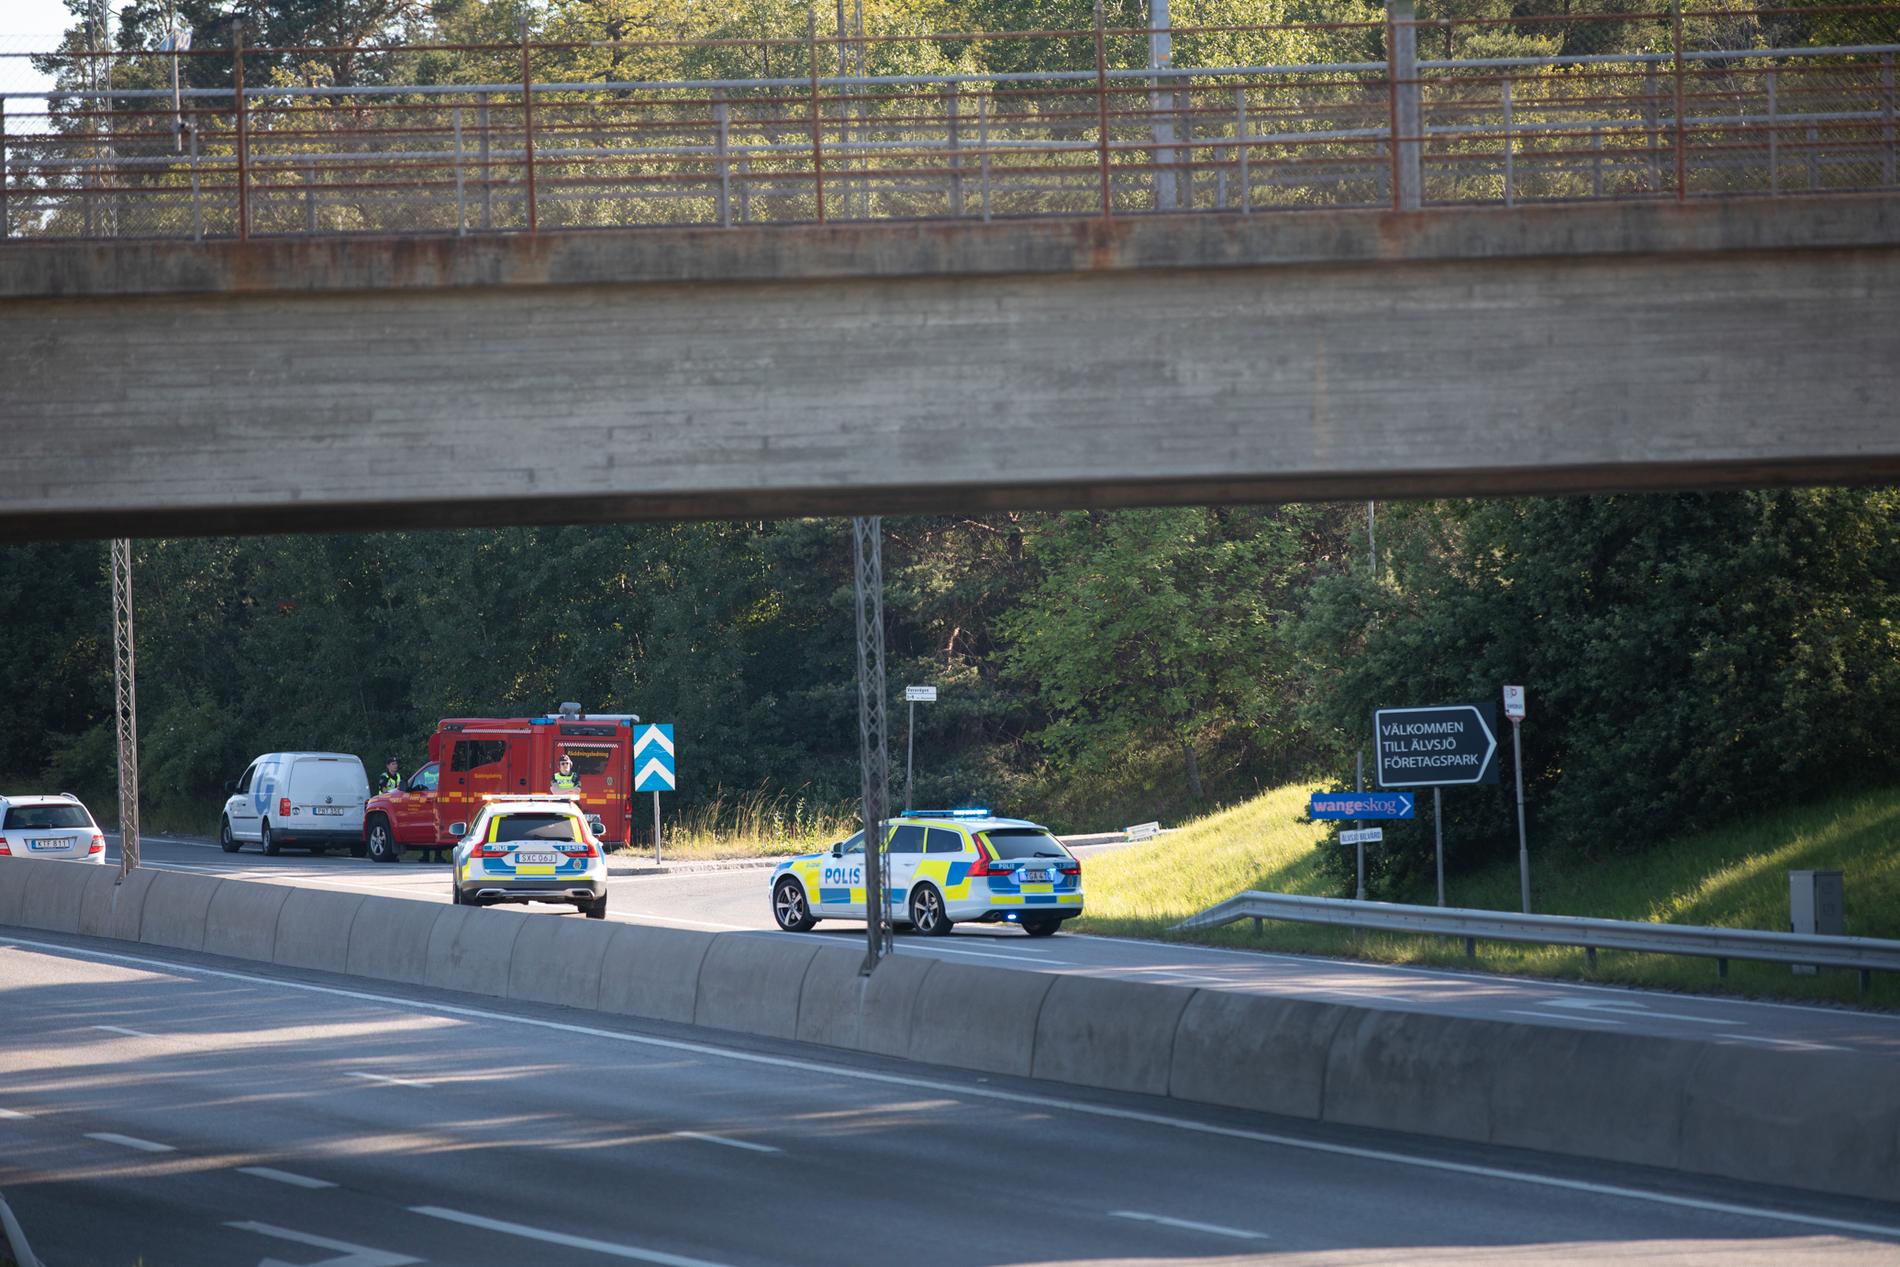 Två personer skadades allvarligt när en husbil exploderade i Älvsjö i södra Stockholm på midsommardagen. En av dem avled senare av sina skador.